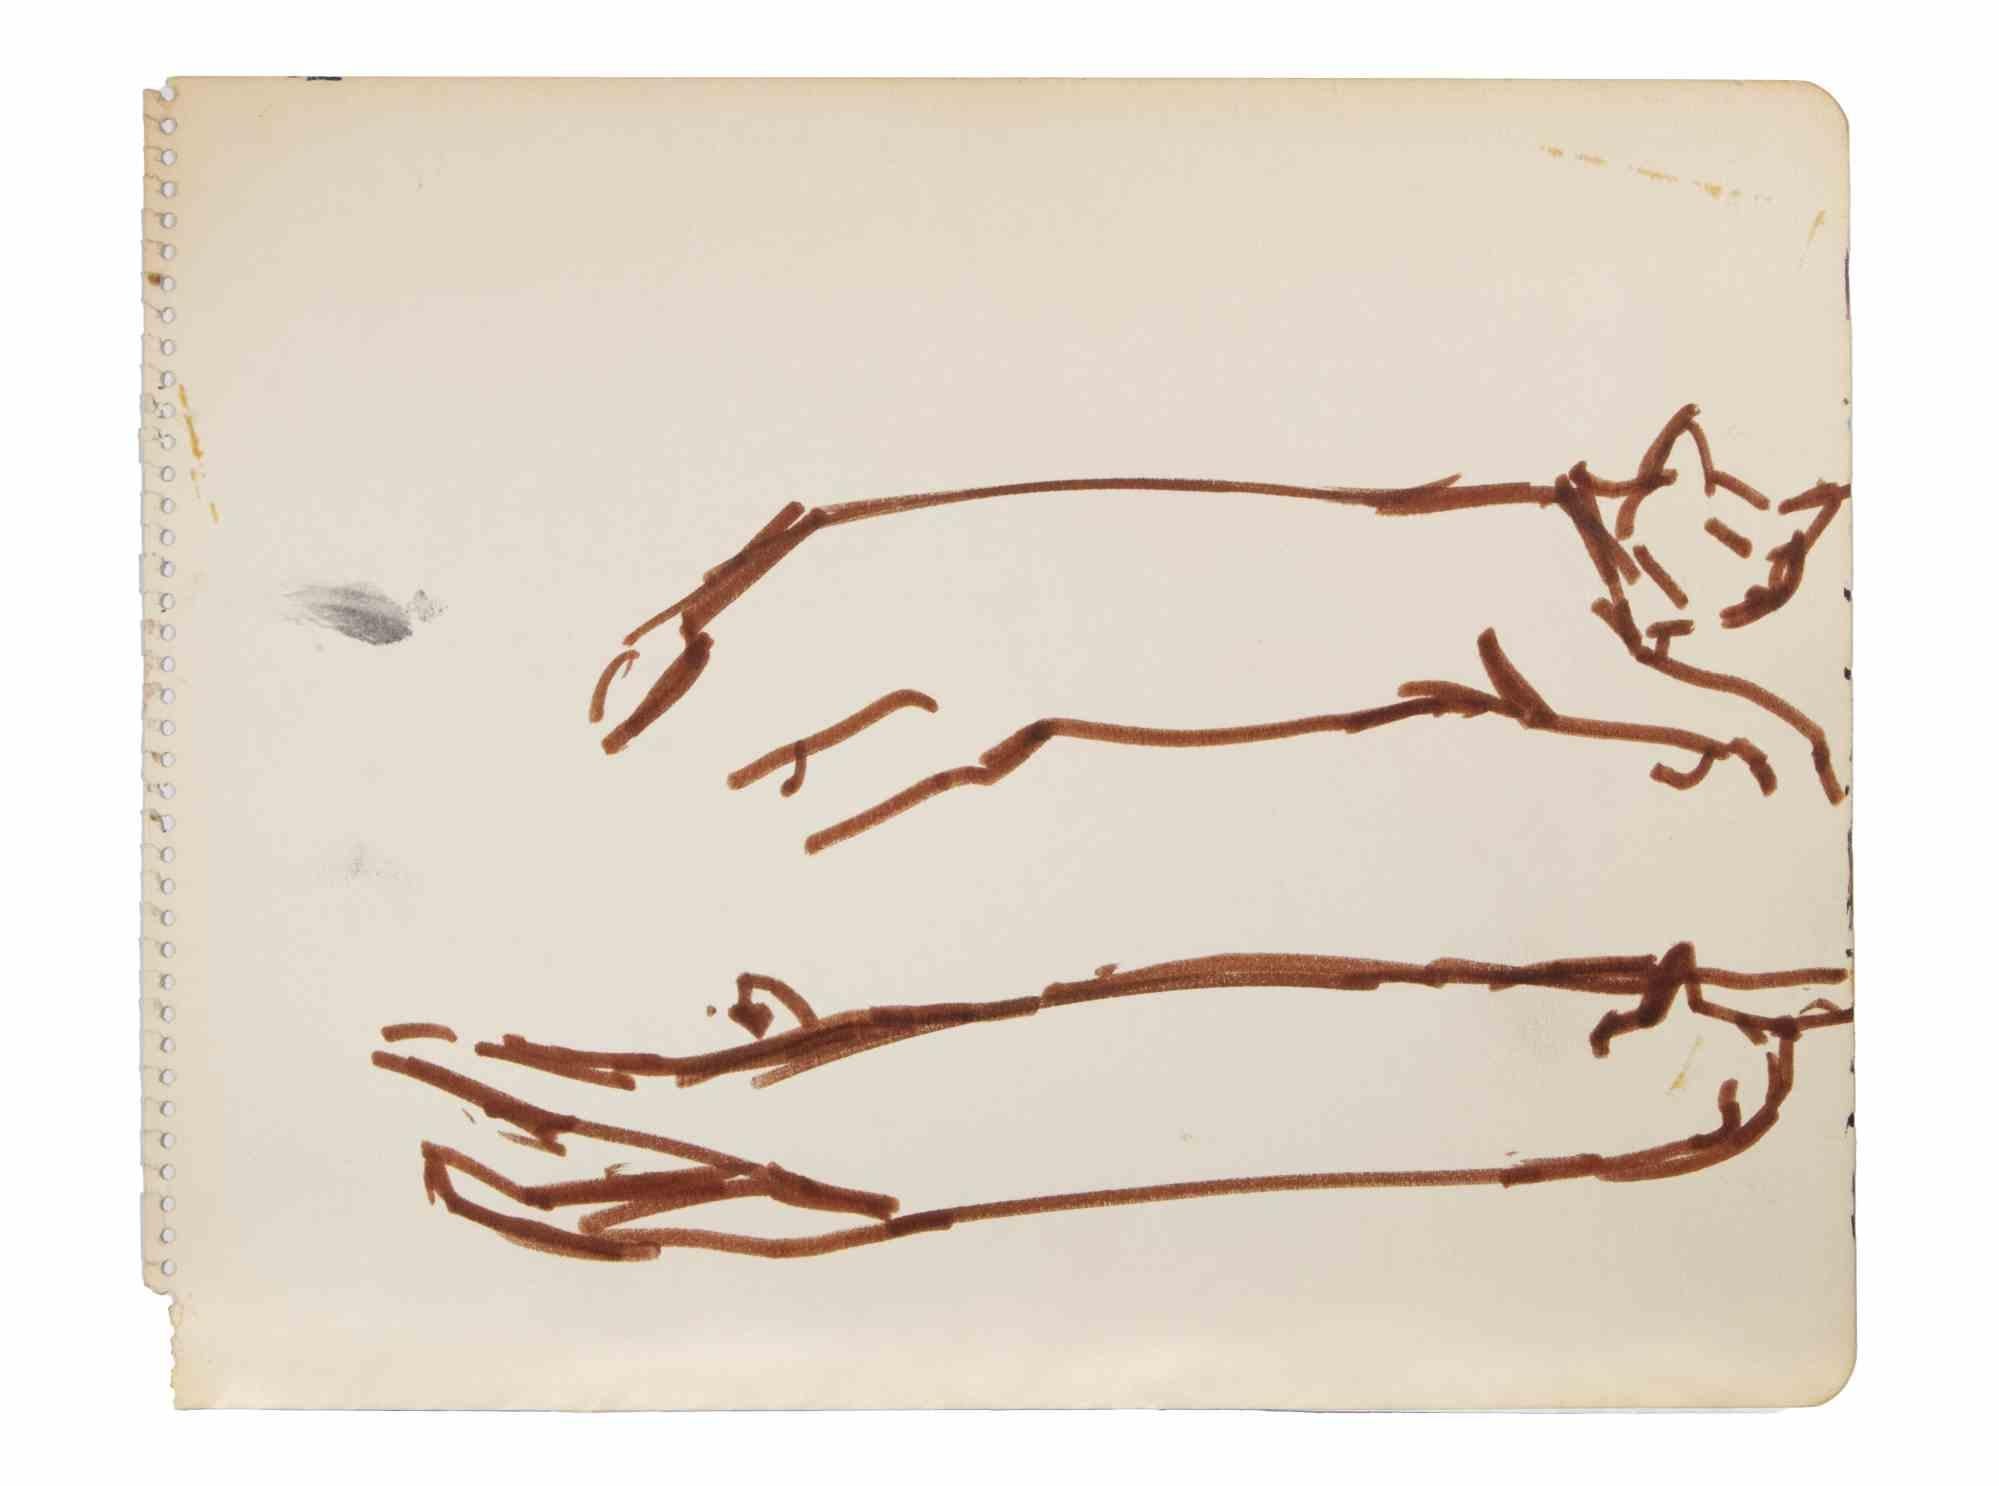 Cats ist eine Colour Maker Zeichnung realisiert von  Reynold Arnould  (Le Havre 1919 - Parigi 1980).

Guter Zustand auf einem Blatt eines Notizbuchs.

Keine Unterschrift.

Reynold Arnould wurde 1919 in Le Havre, Frankreich, geboren. Er studierte an